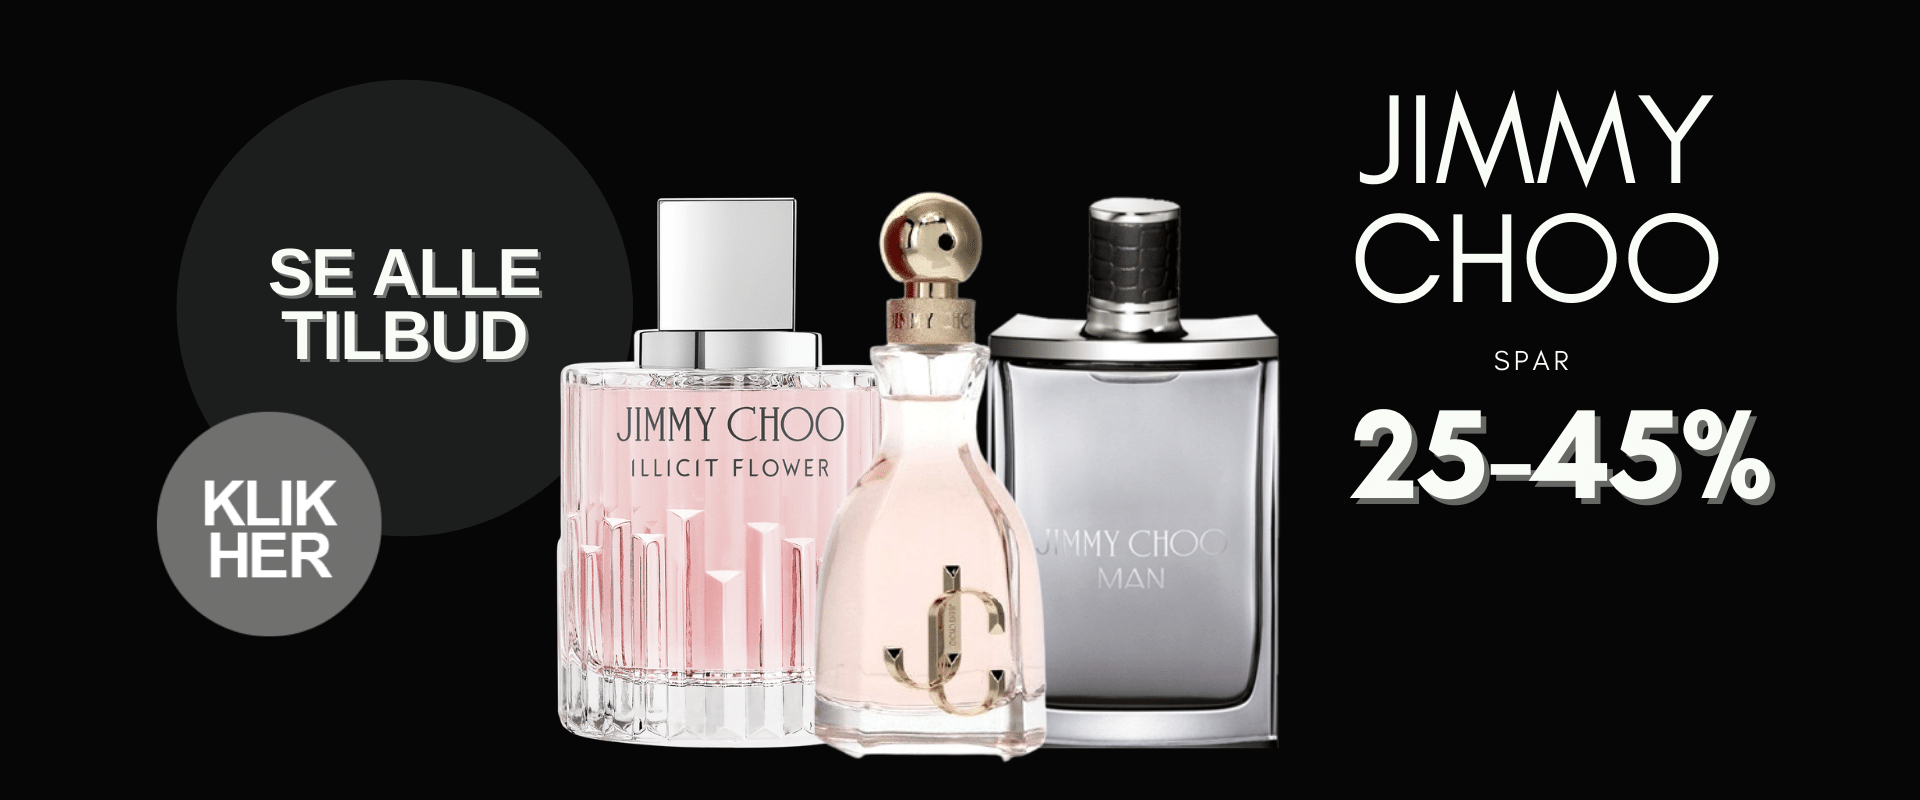 Black Week tilbud Jimmy Choo Parfume Klik Her